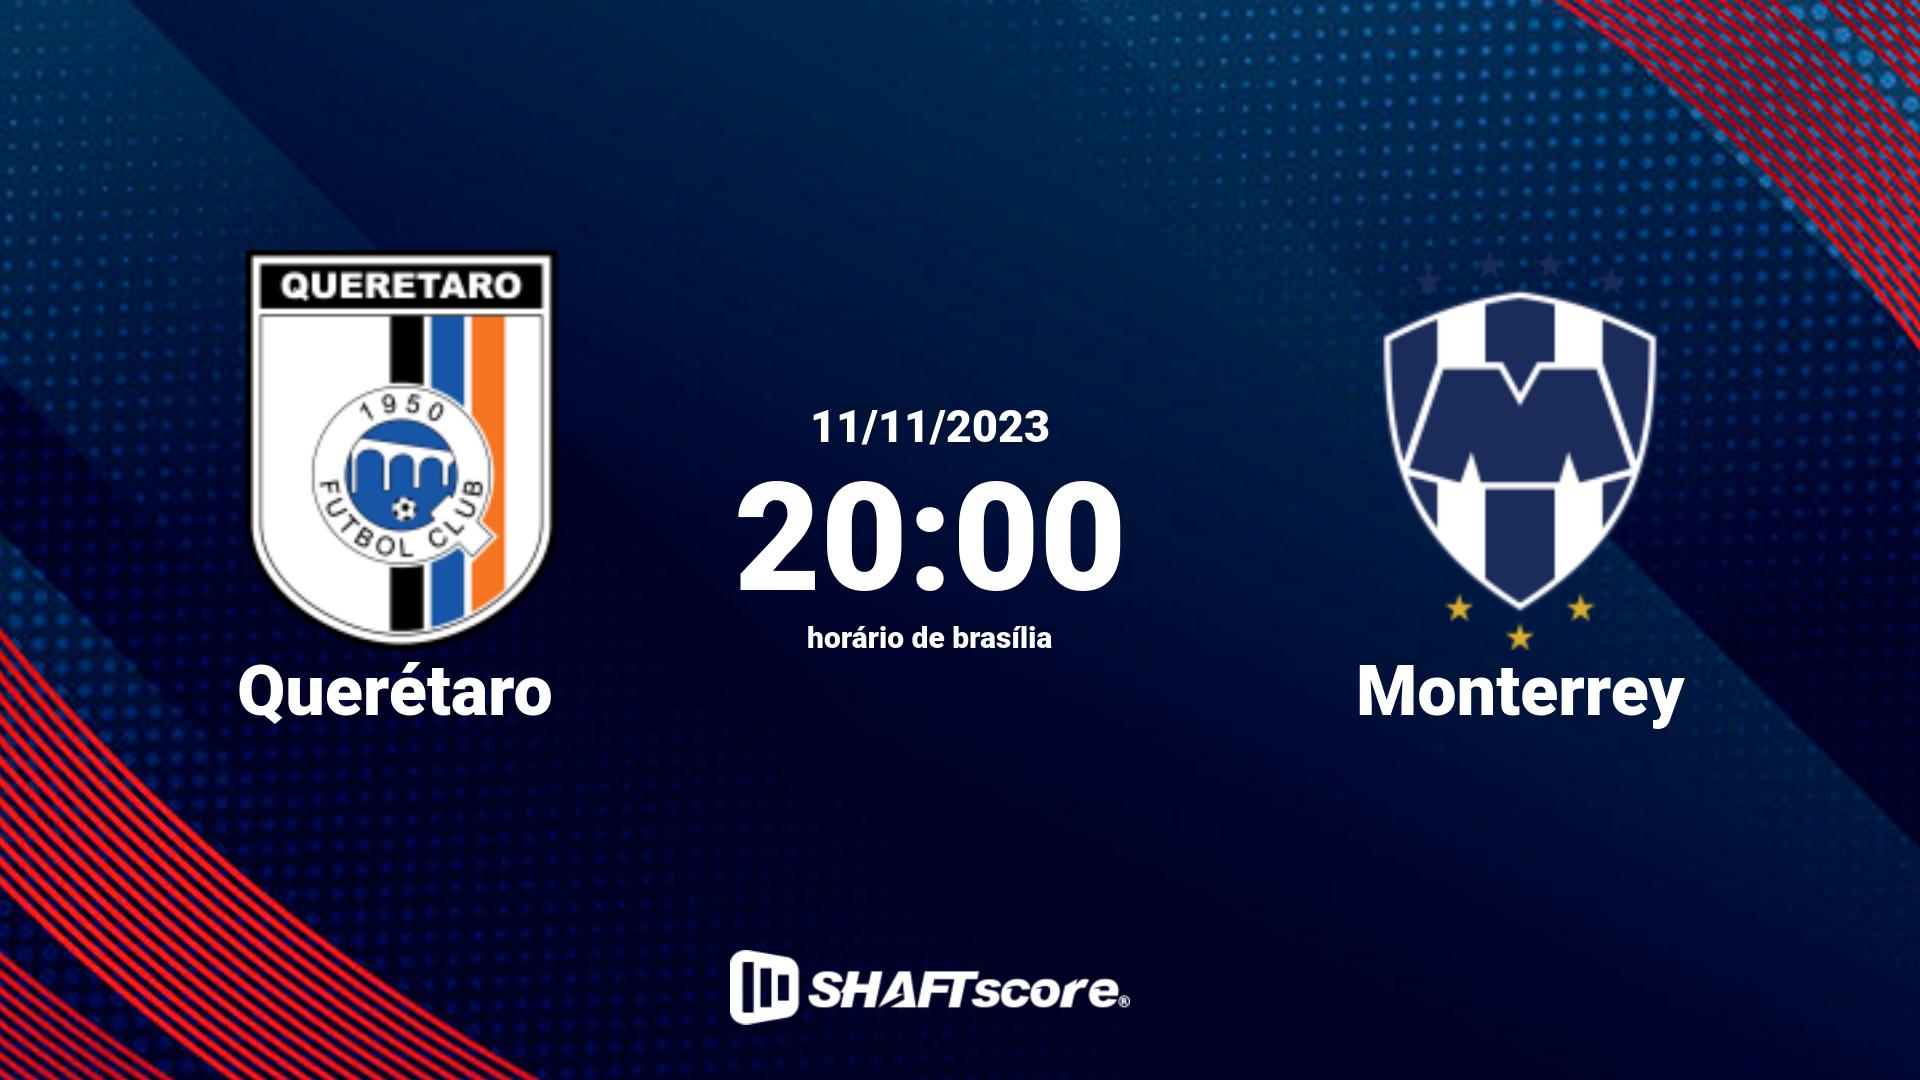 Estatísticas do jogo Querétaro vs Monterrey 11.11 20:00